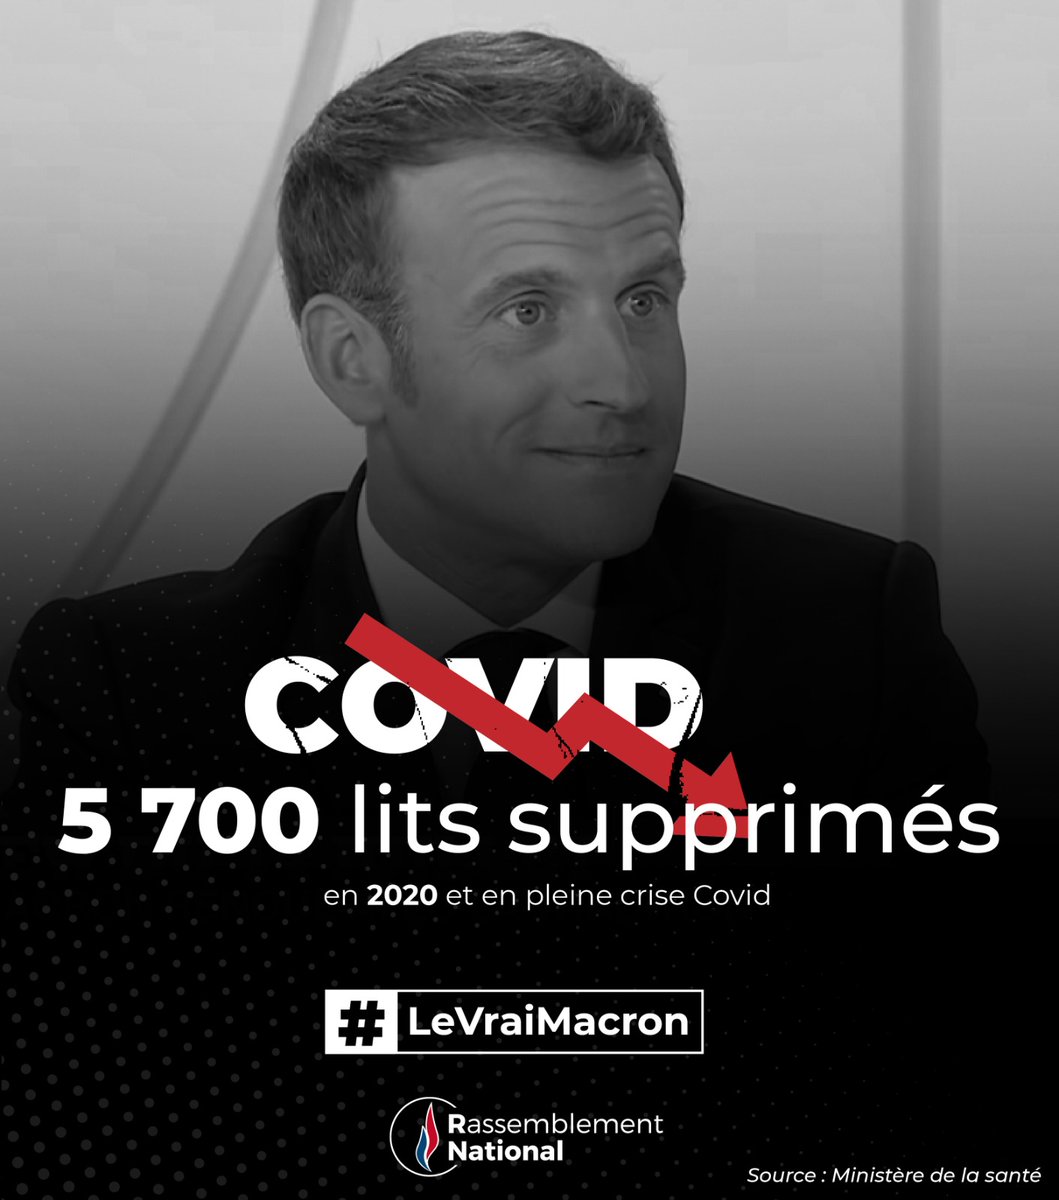 En pleine pandémie, Emmanuel Macron a continué la fermeture des lits d'hospitalisation complète. 5 700 sur l'année 2020 !  

#LeVraiMacron #Macron20h #MacronTF1 #OuVaLaFrance